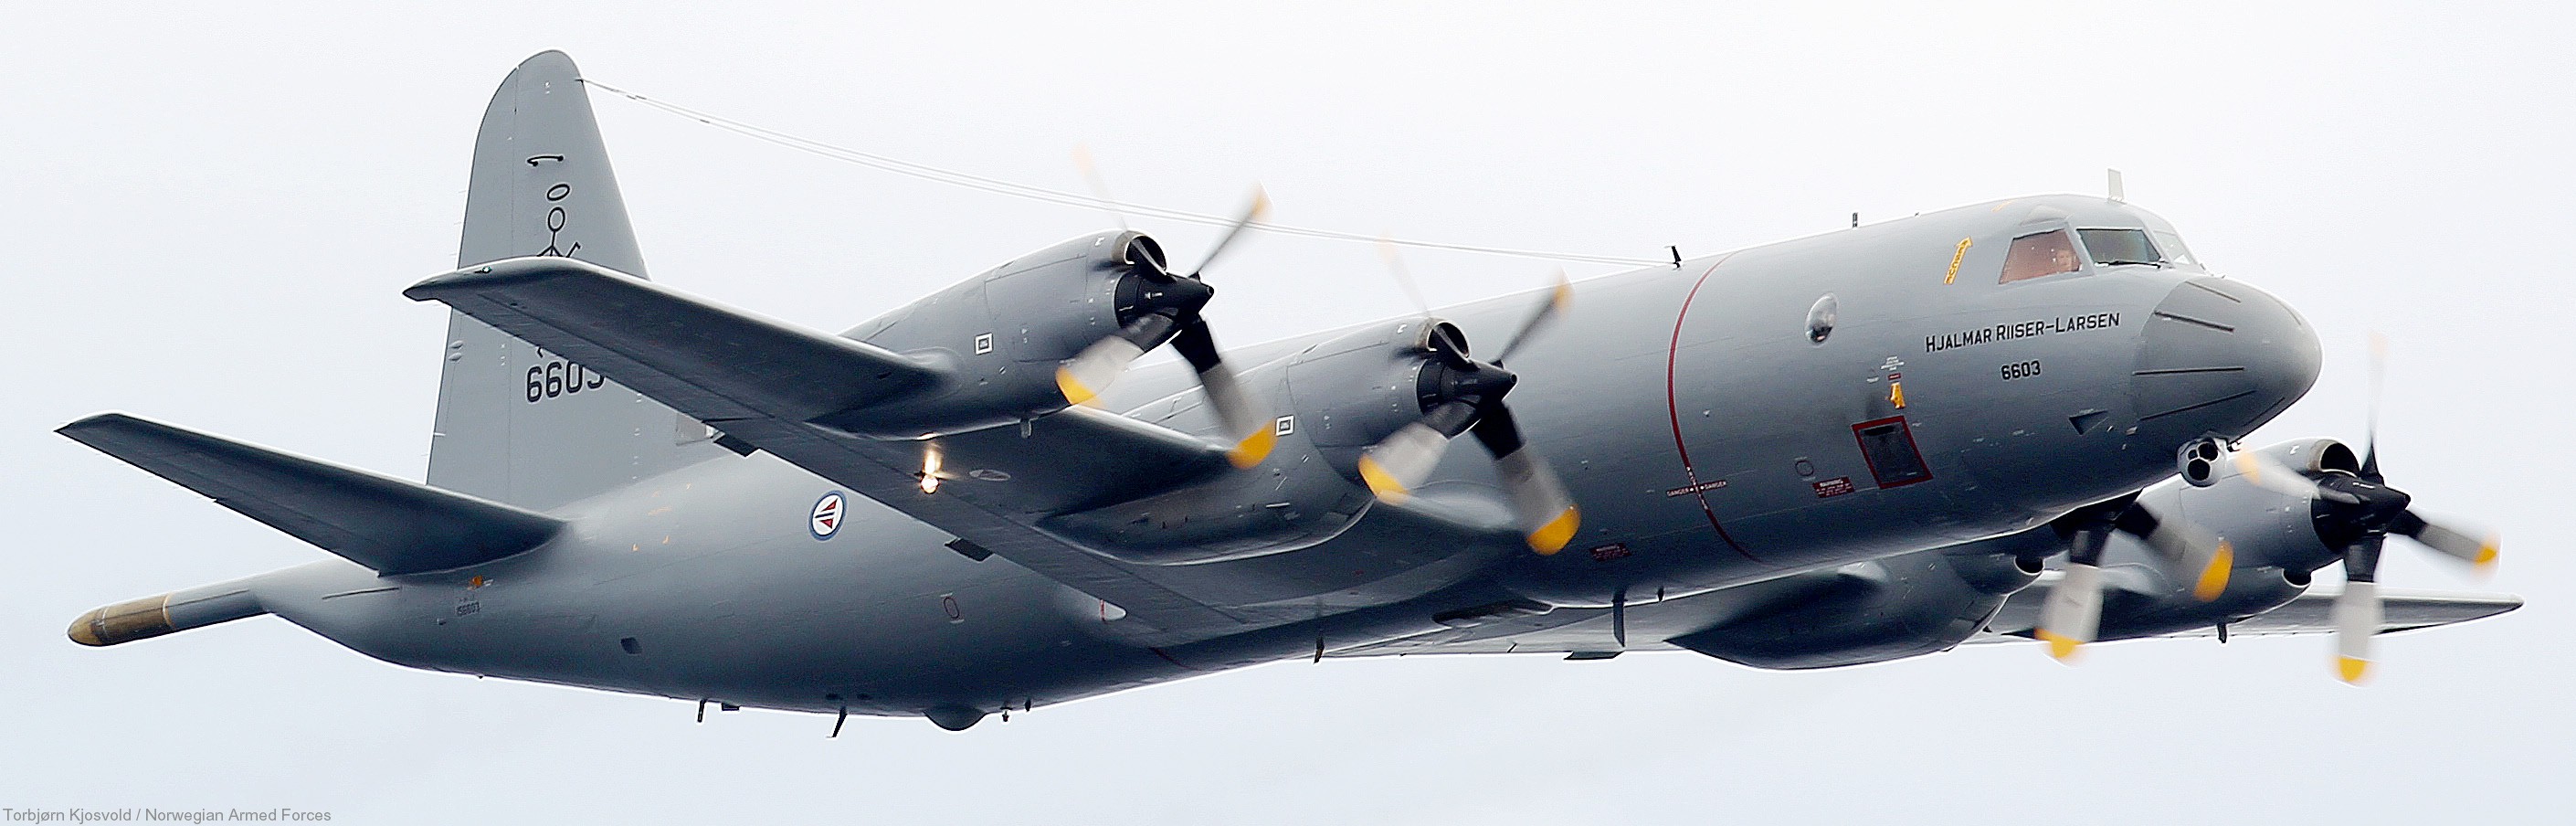 lockheed p-3n orion hjalmar riiser larsen 6603 patrol royal norwegian air force 03